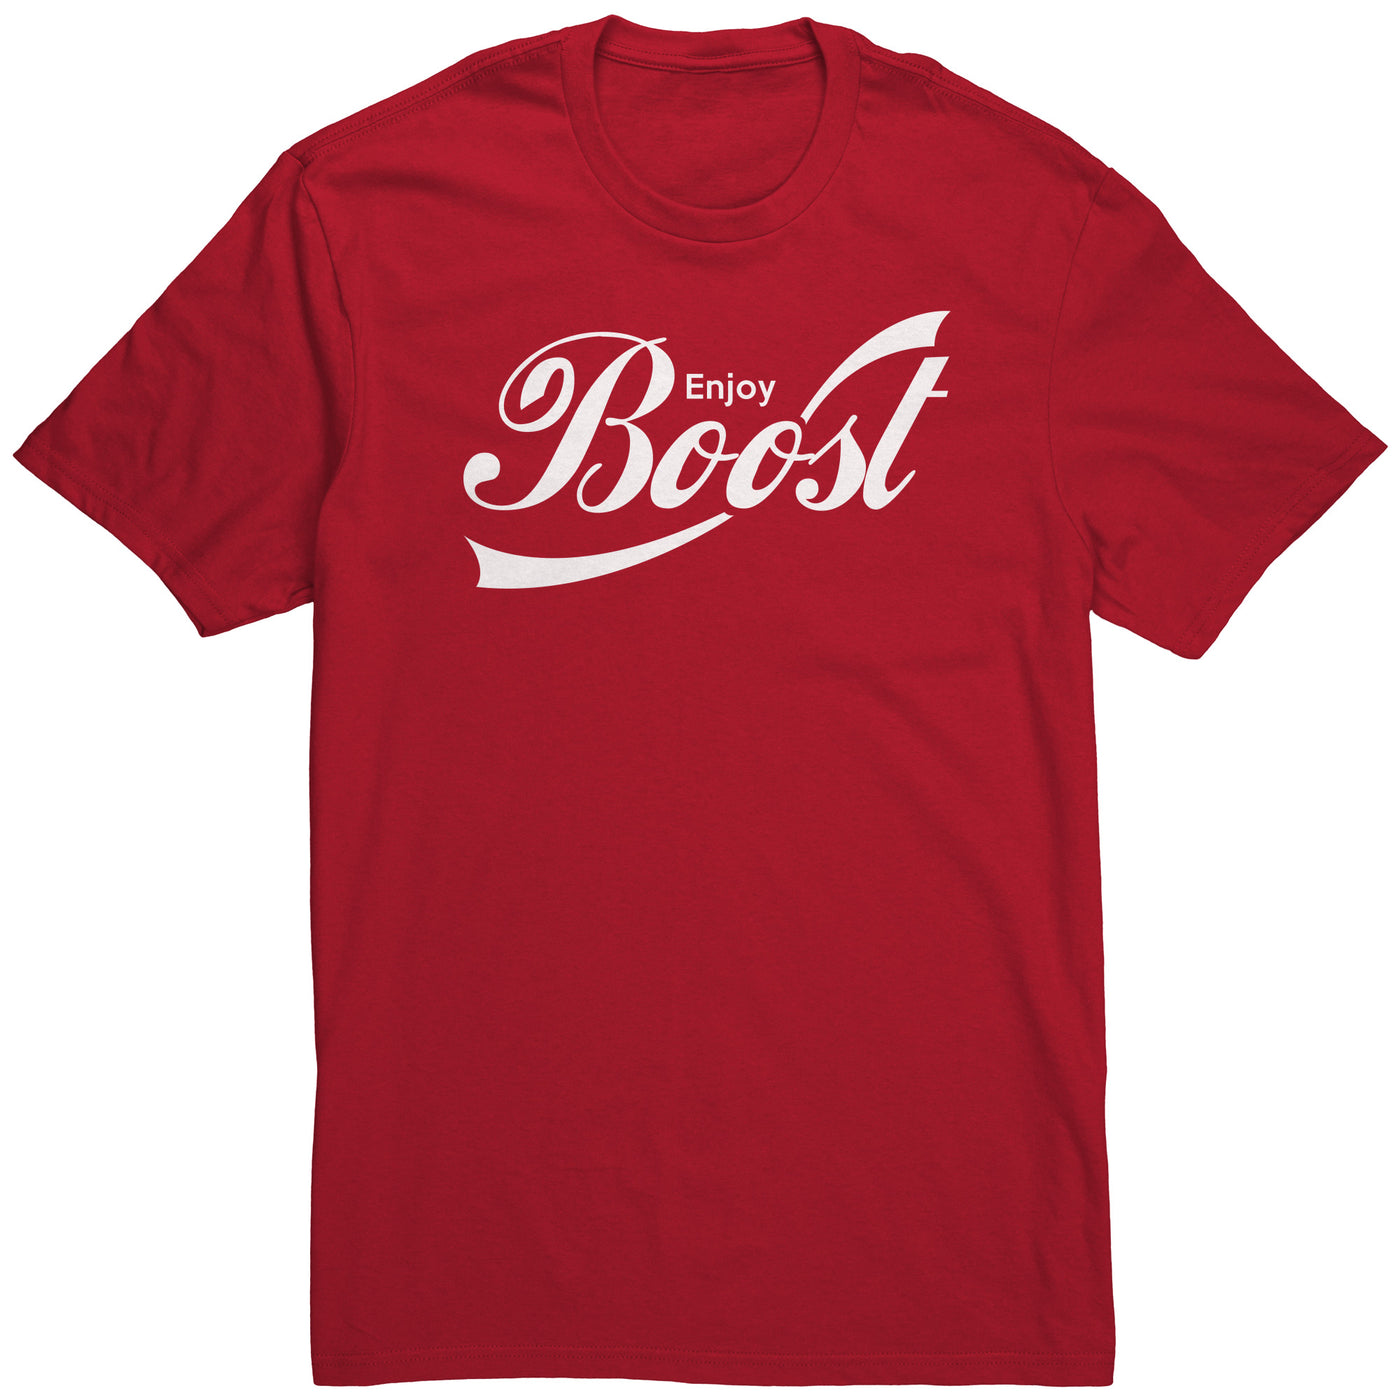 enjoy-boost-shirt-red